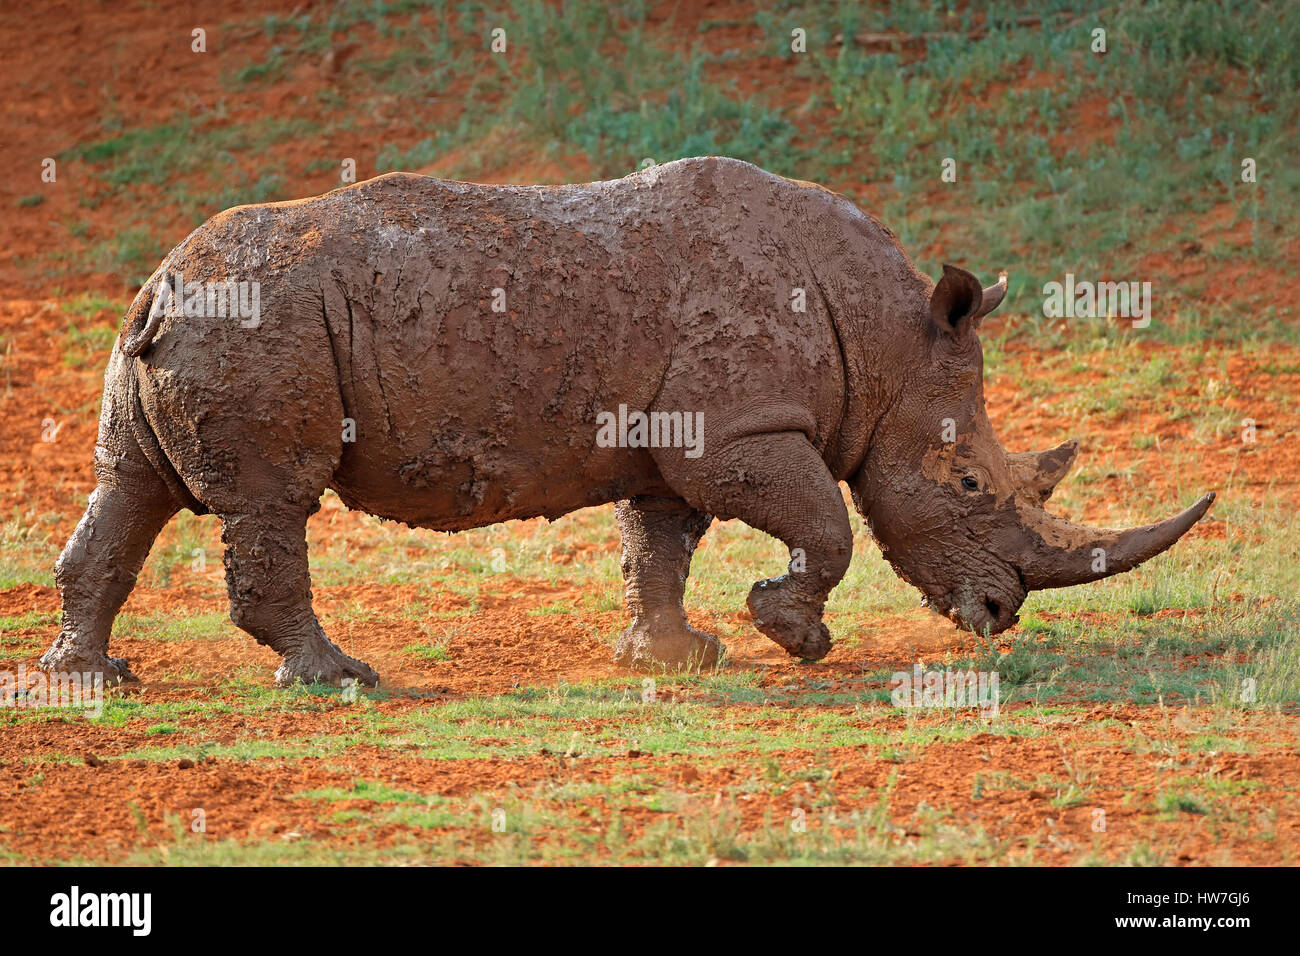 Un rinoceronte blanco (Ceratotherium simum) cubierto de barro, Sudáfrica Foto de stock